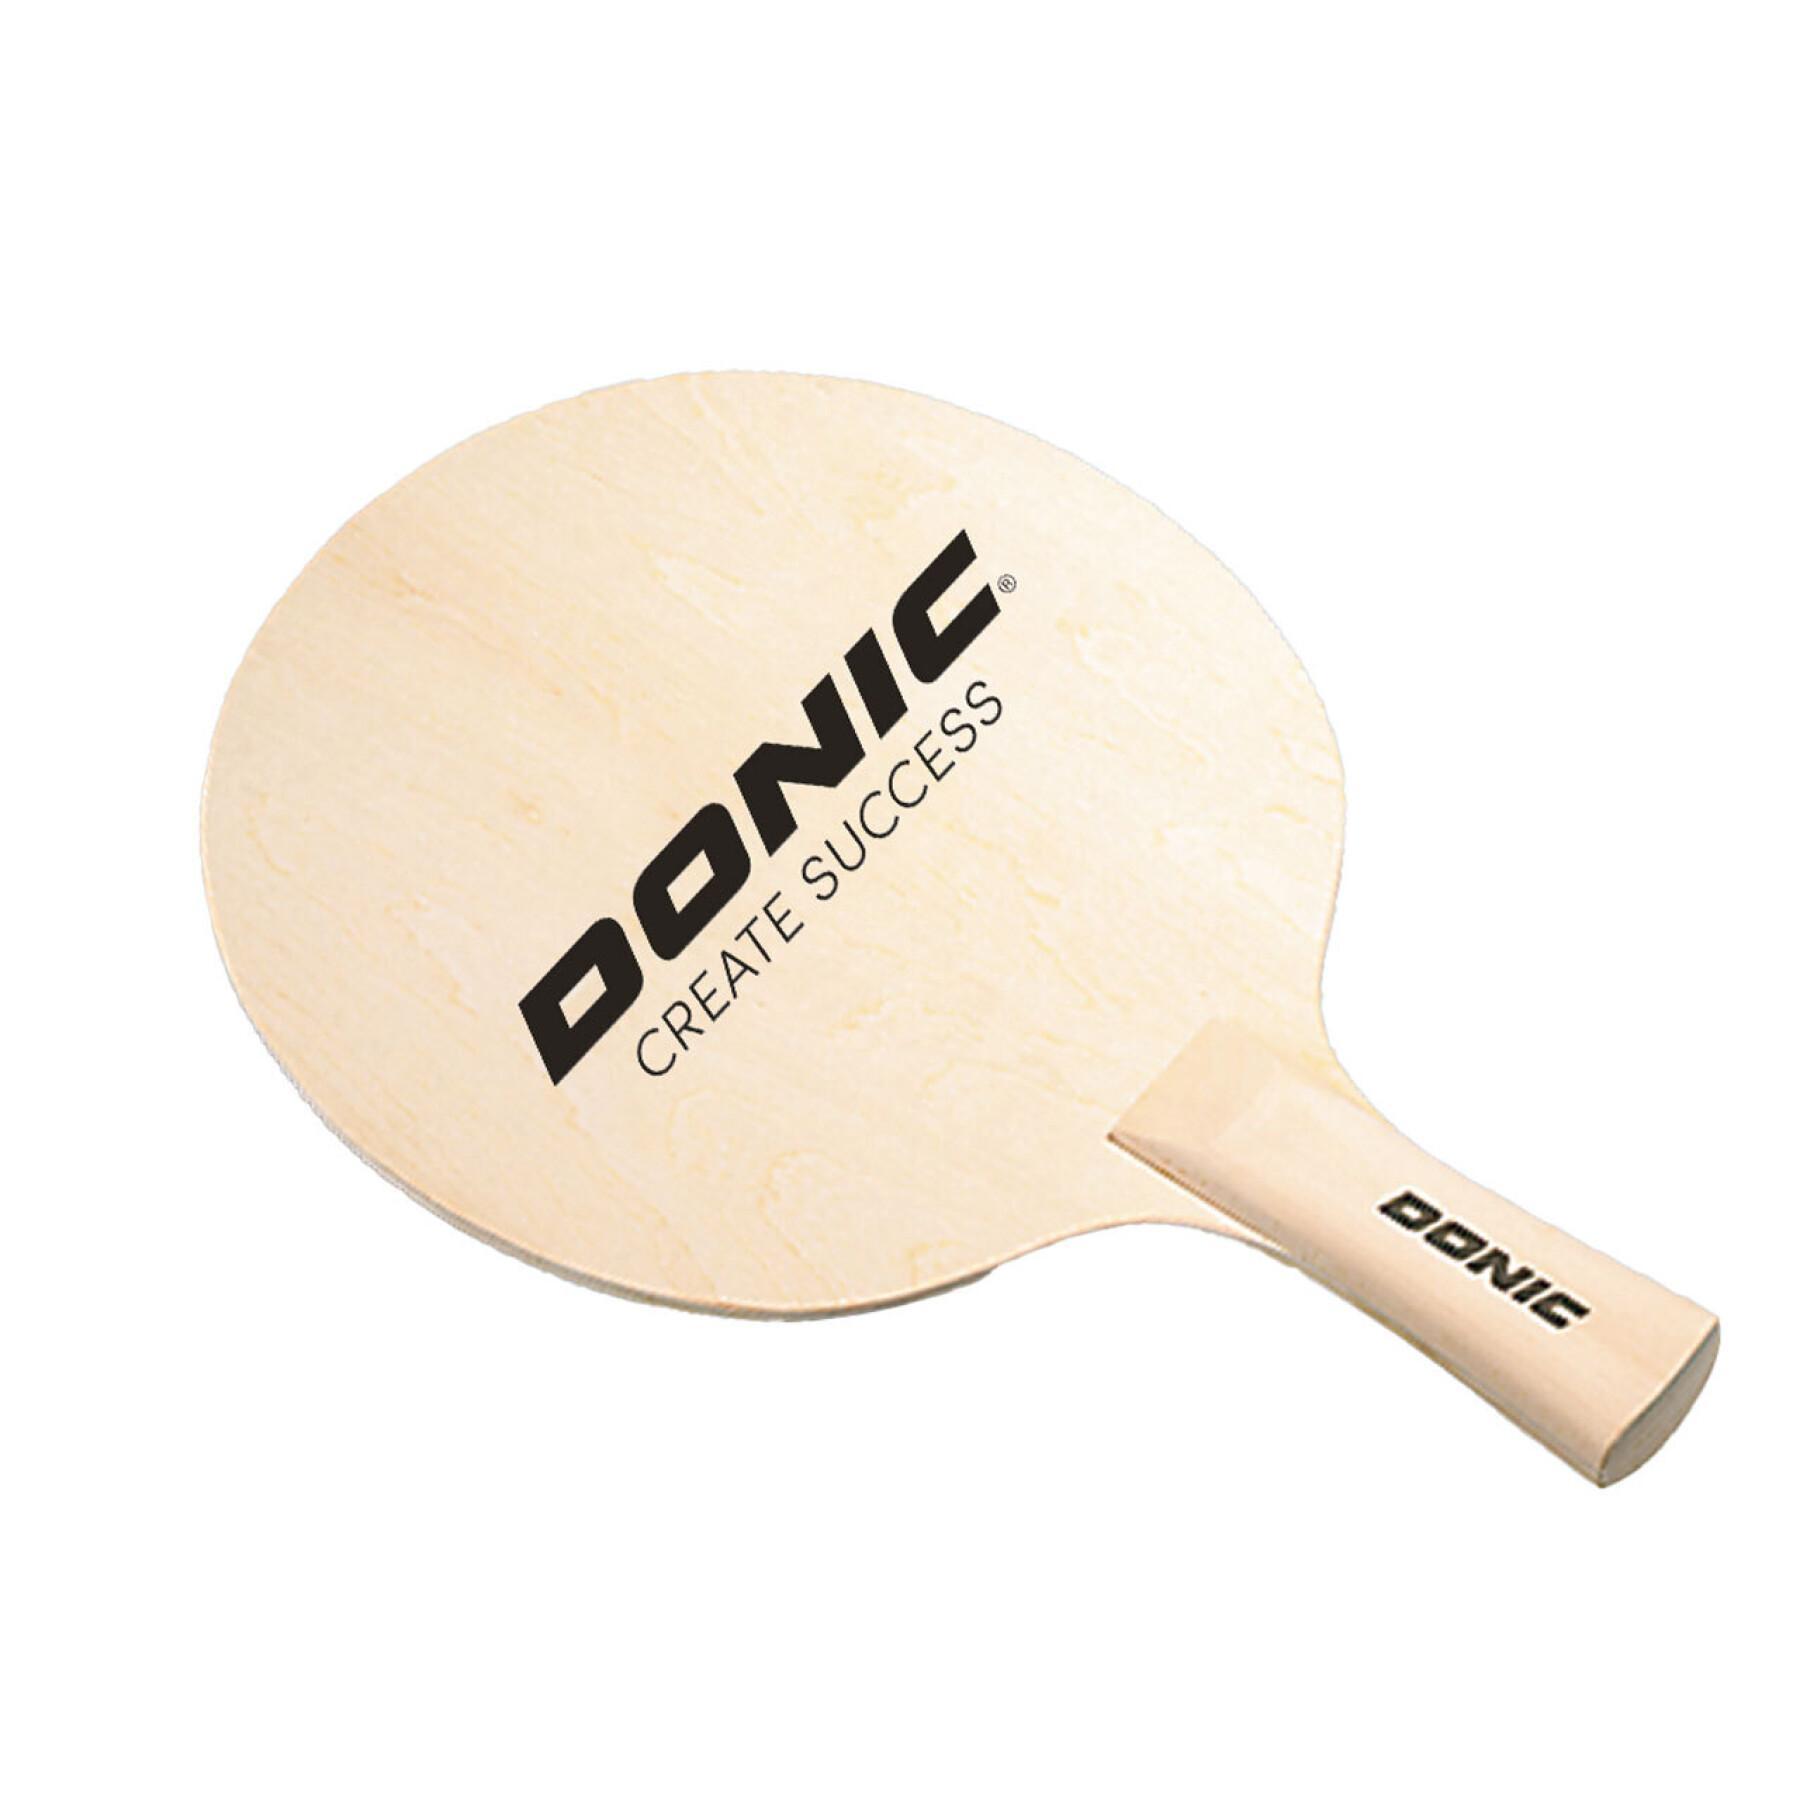 Racchetta da ping pong in legno Donic